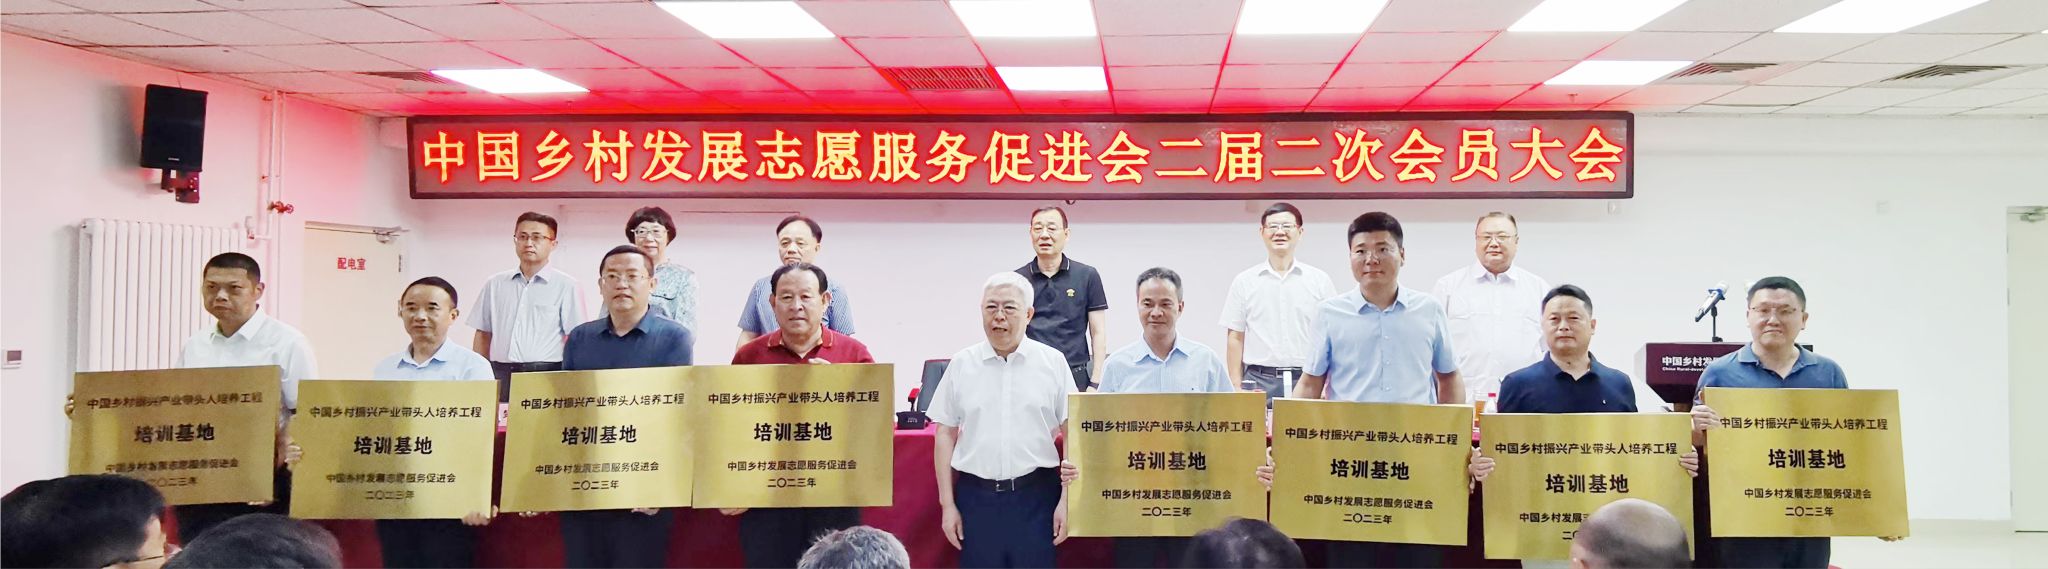 喜报 |泉州海洋学院被授予“中国乡村振兴产业带头人培养工程·培训基地”称号